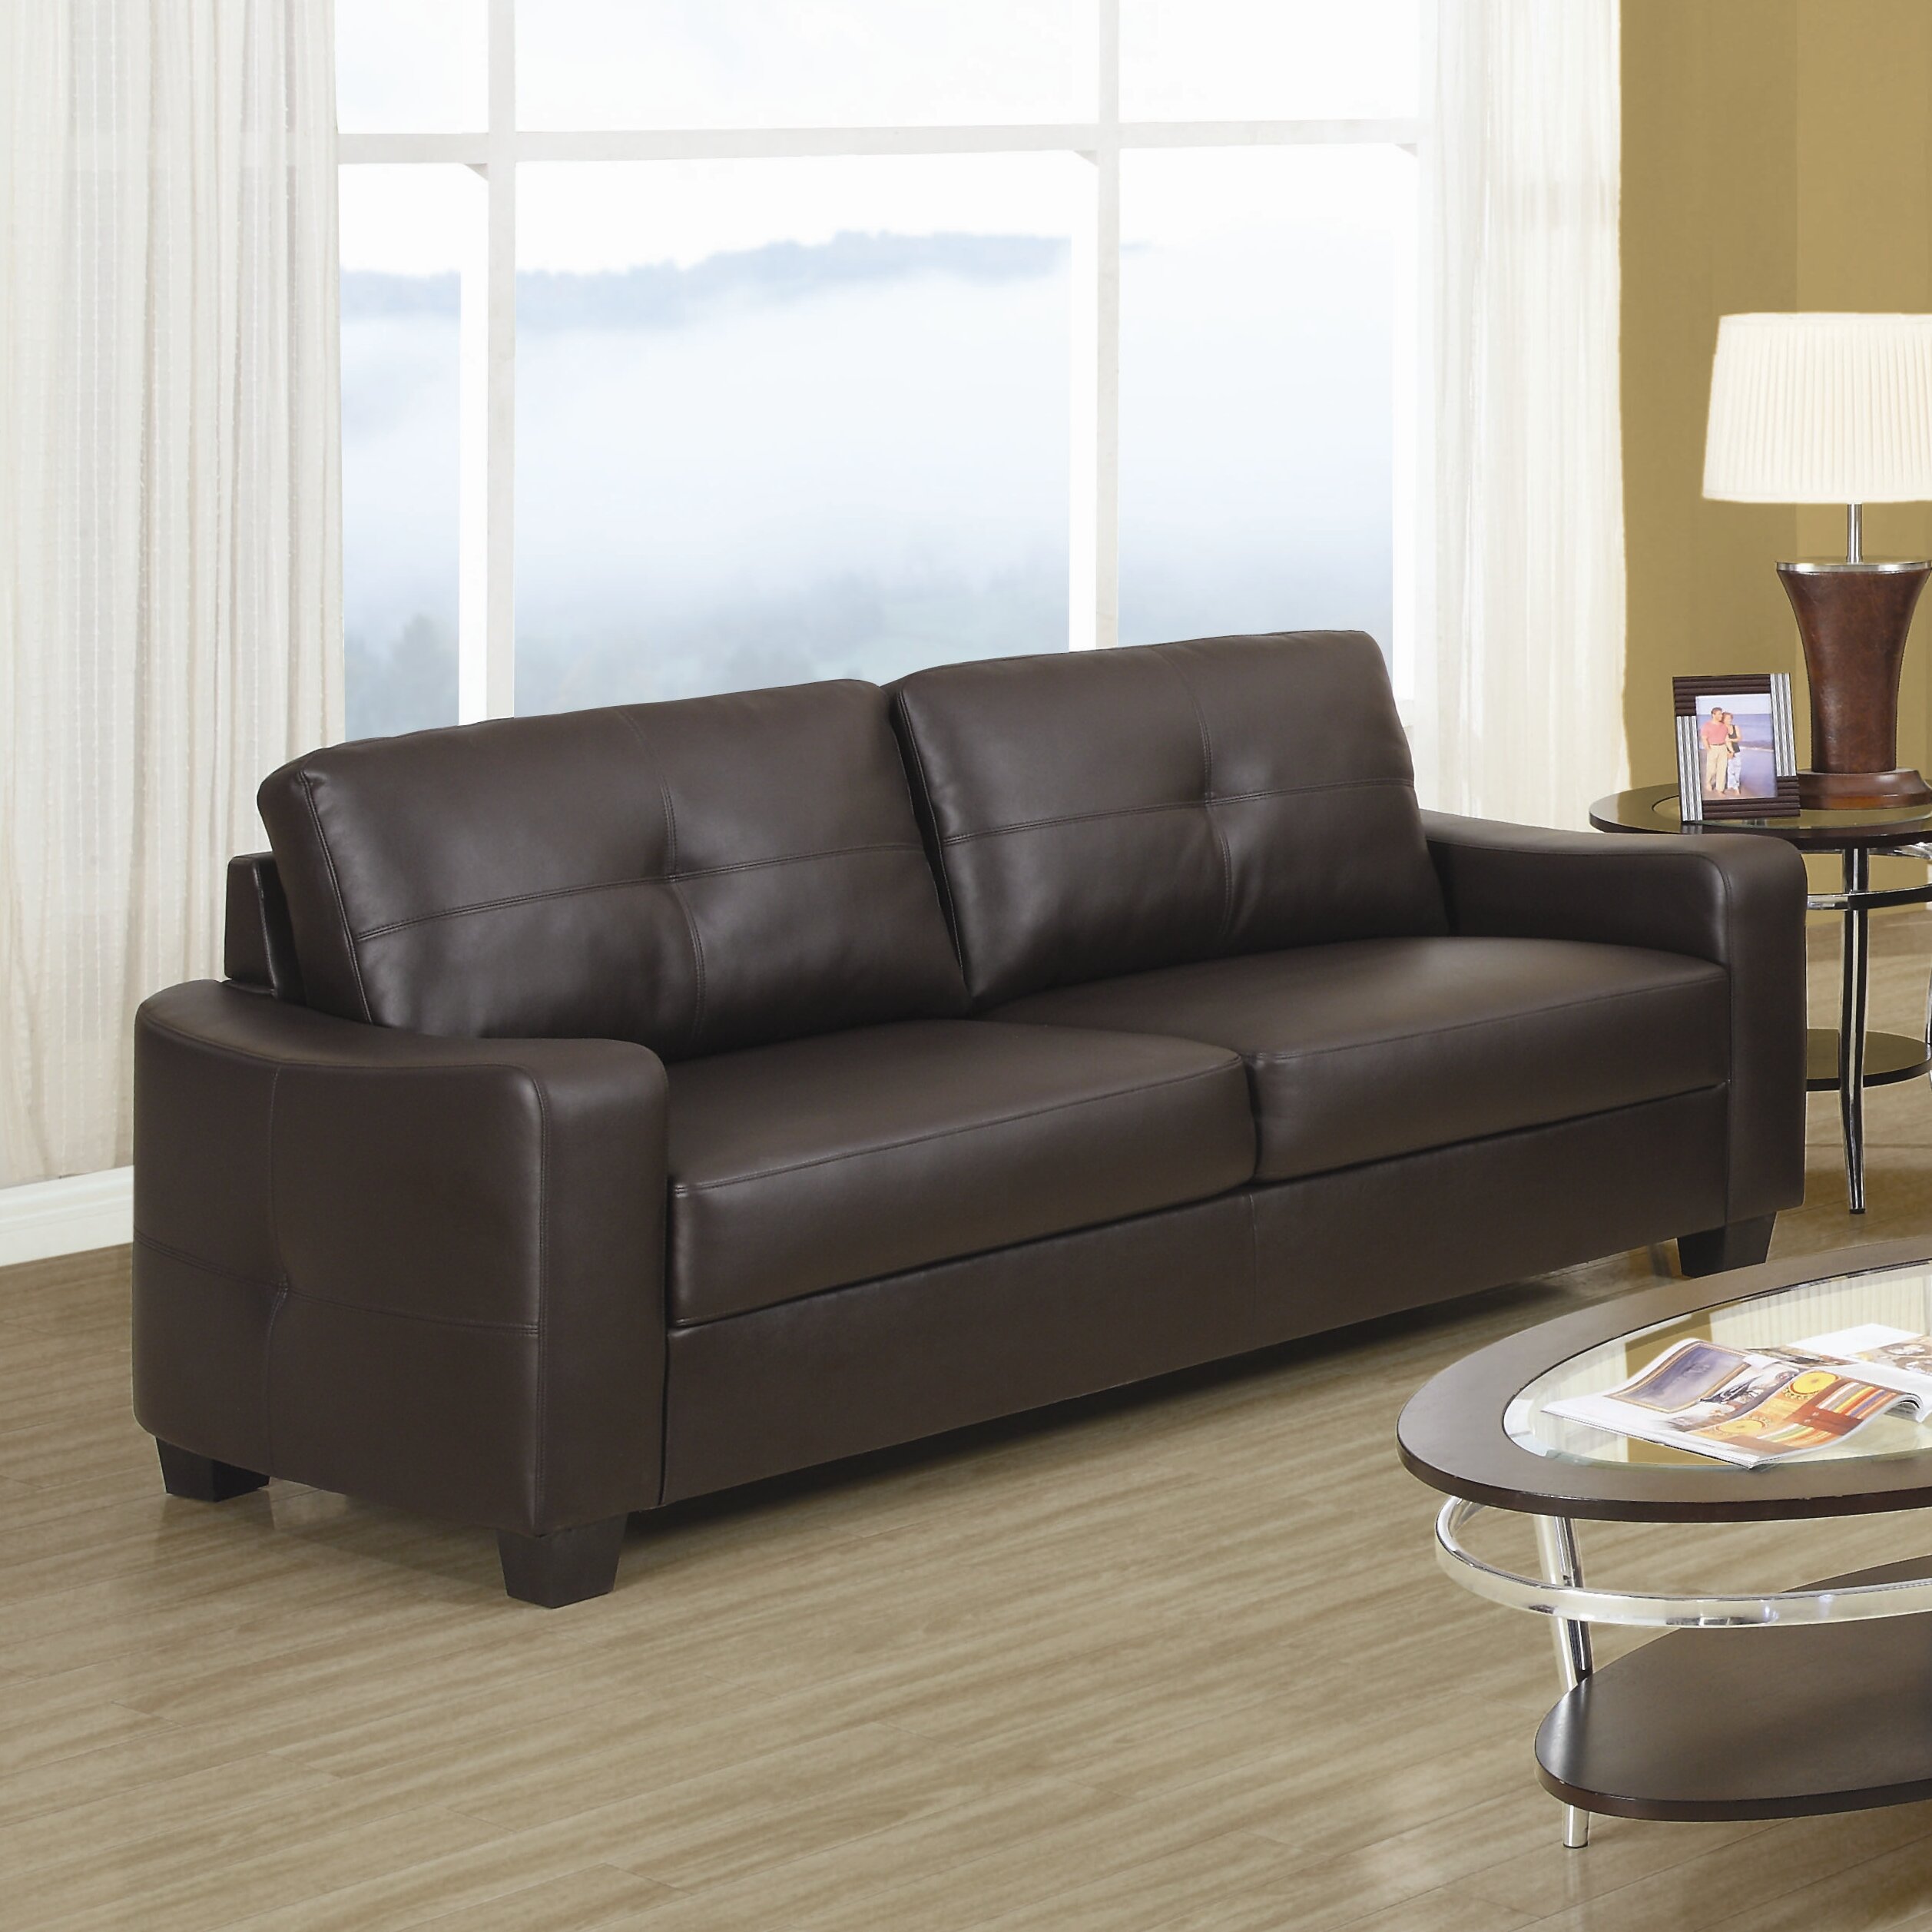 Oakwood Tufted Leather Sofa